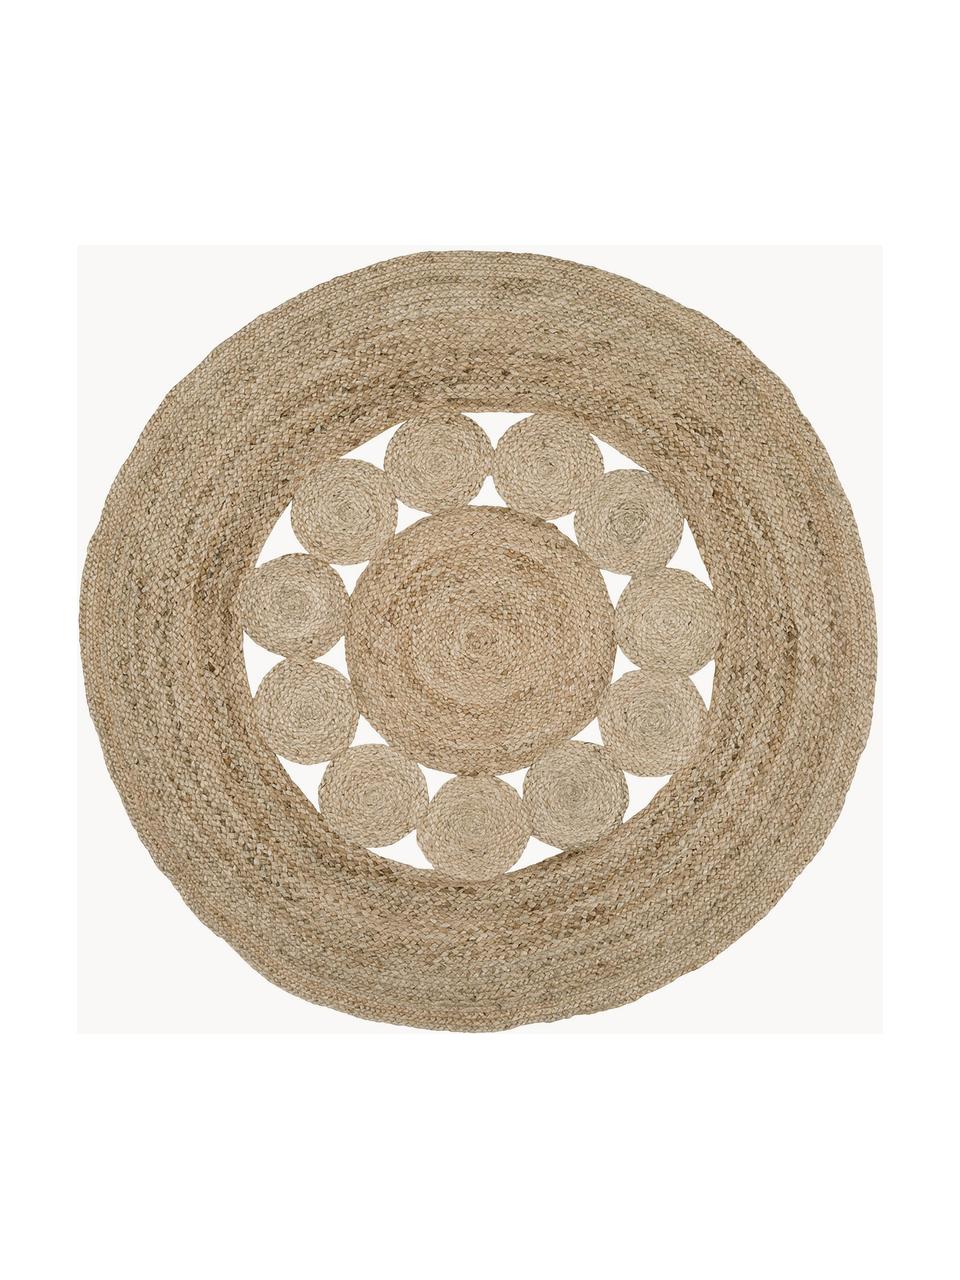 Okrúhly ručne tkaný jutový koberec Tapu, 100 % juta, Hnedá, Ø 150 cm (veľkosť M)